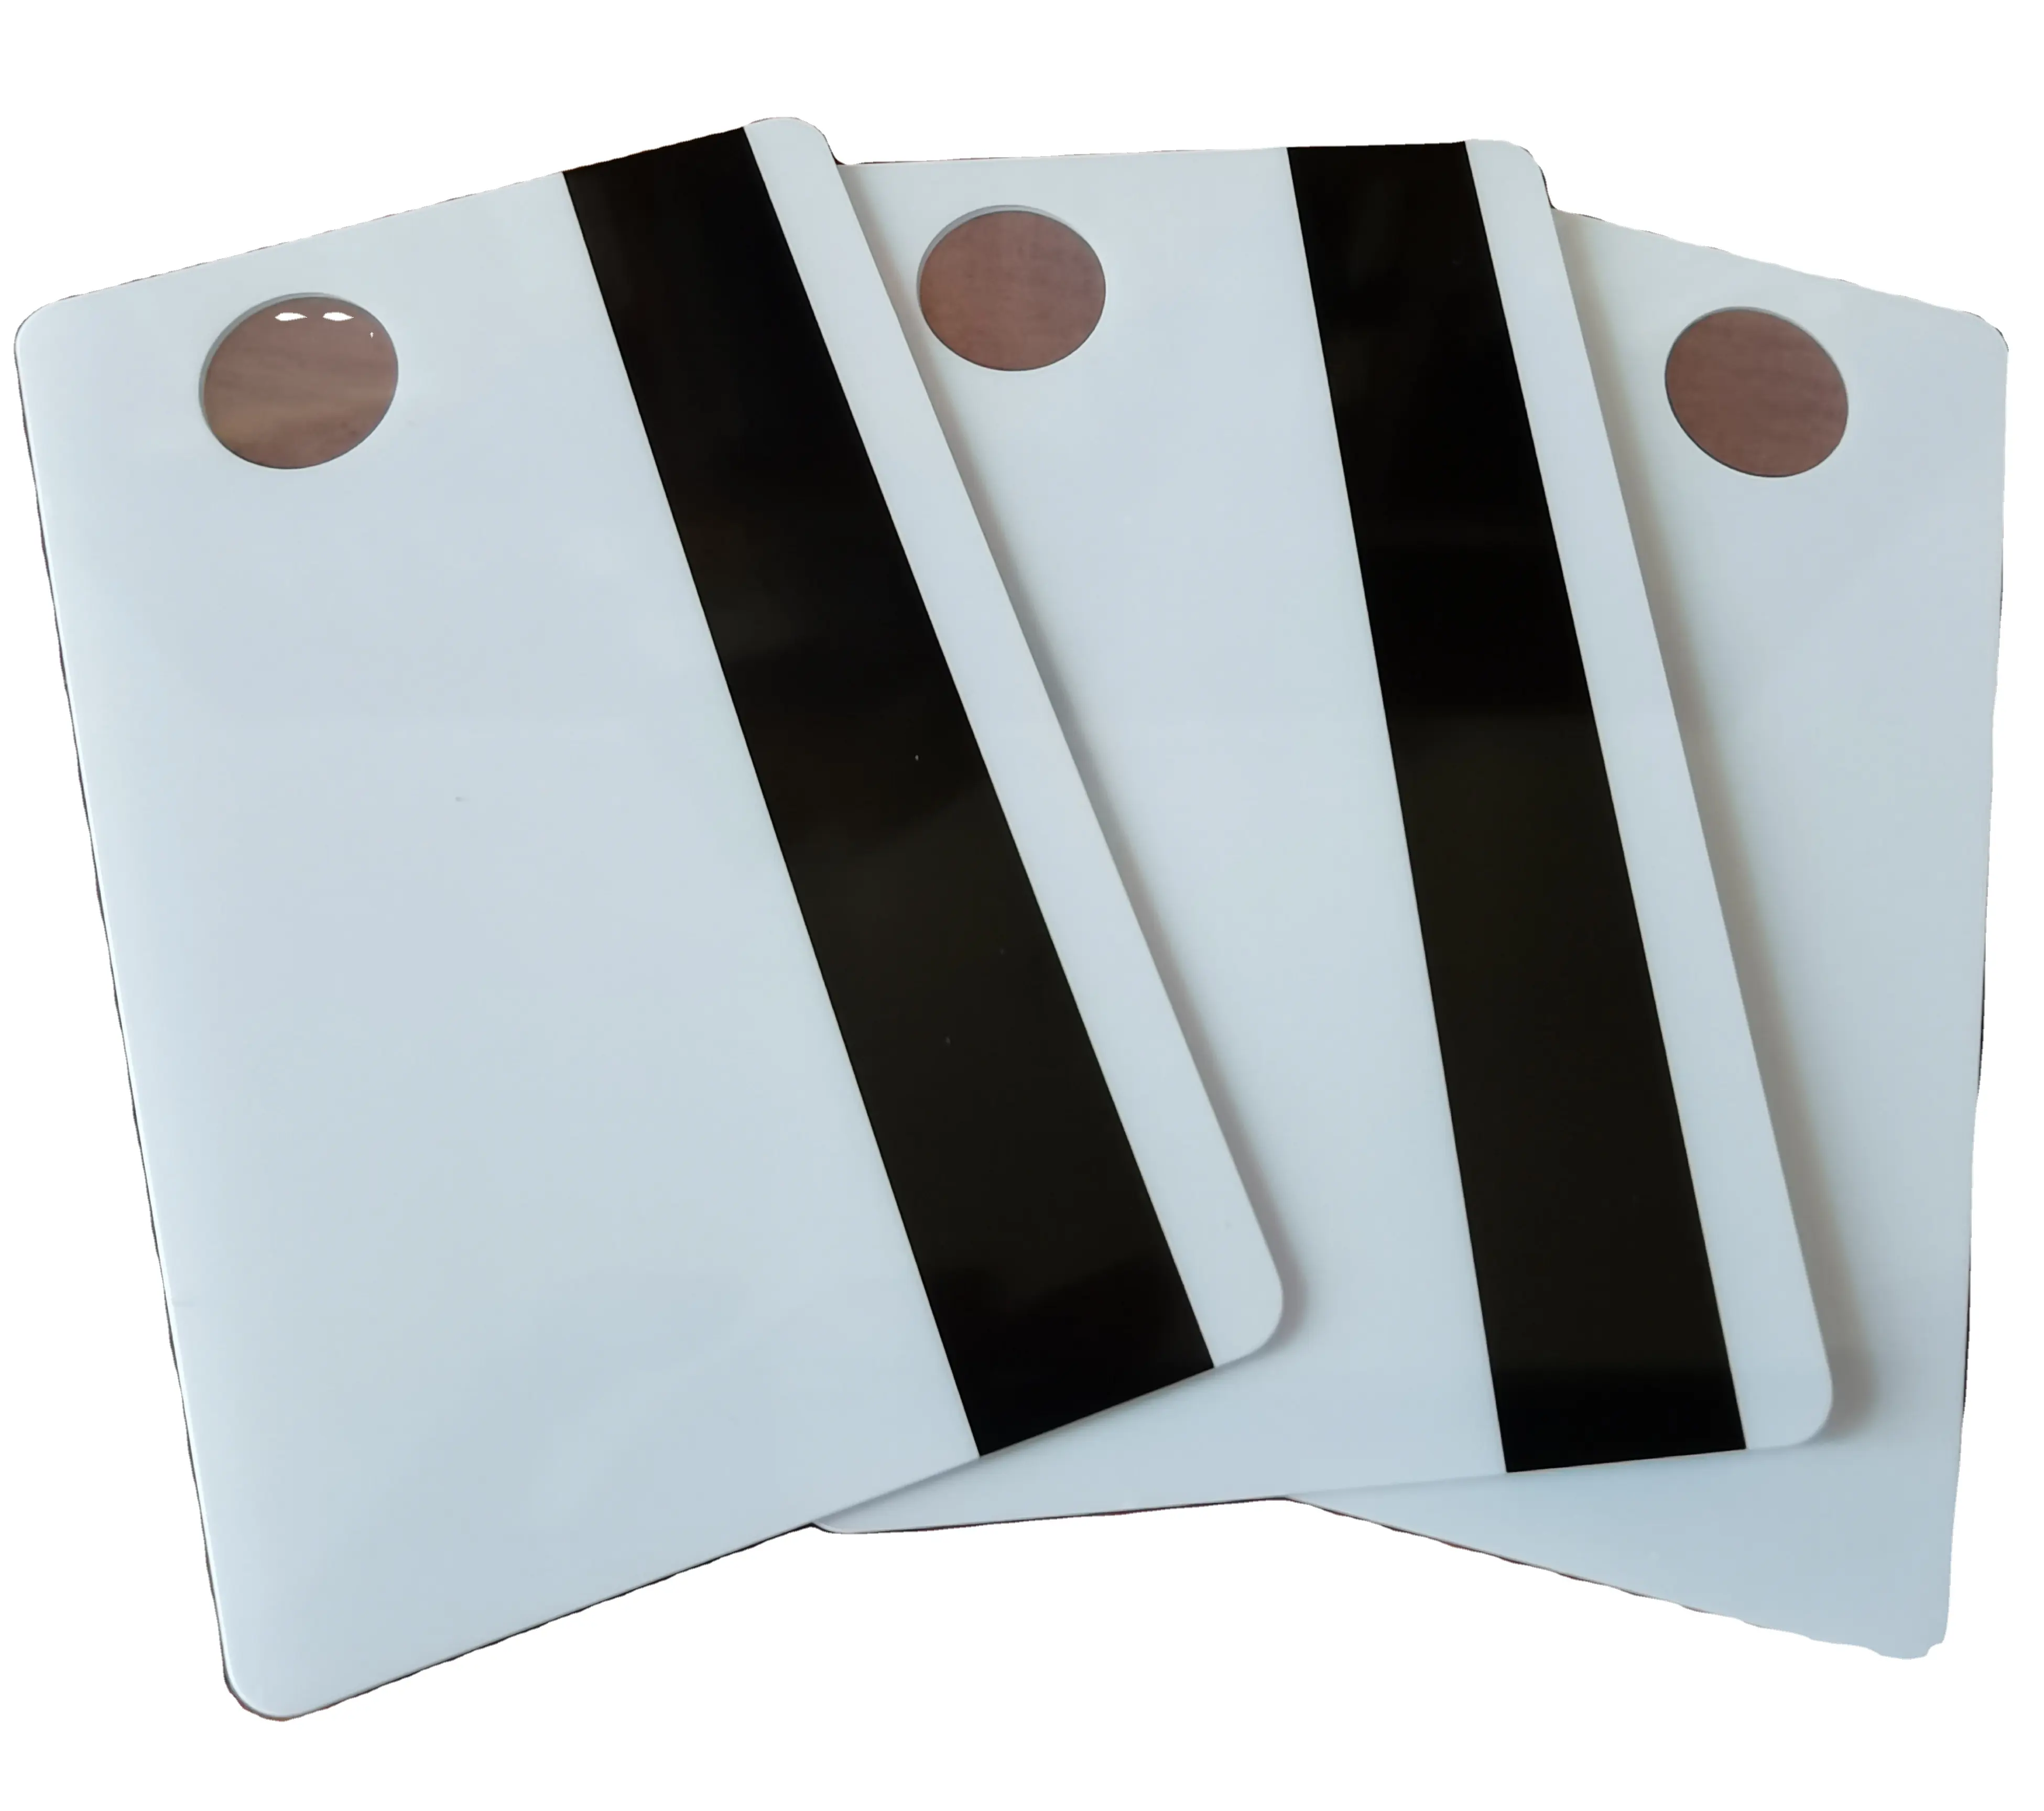 यूवी प्रिंटिंग होलोग्राफिक स्टिकर के साथ जावा एनएफसी चिप के साथ उच्च गुणवत्ता वाला पॉलीकार्बोनेट कार्ड